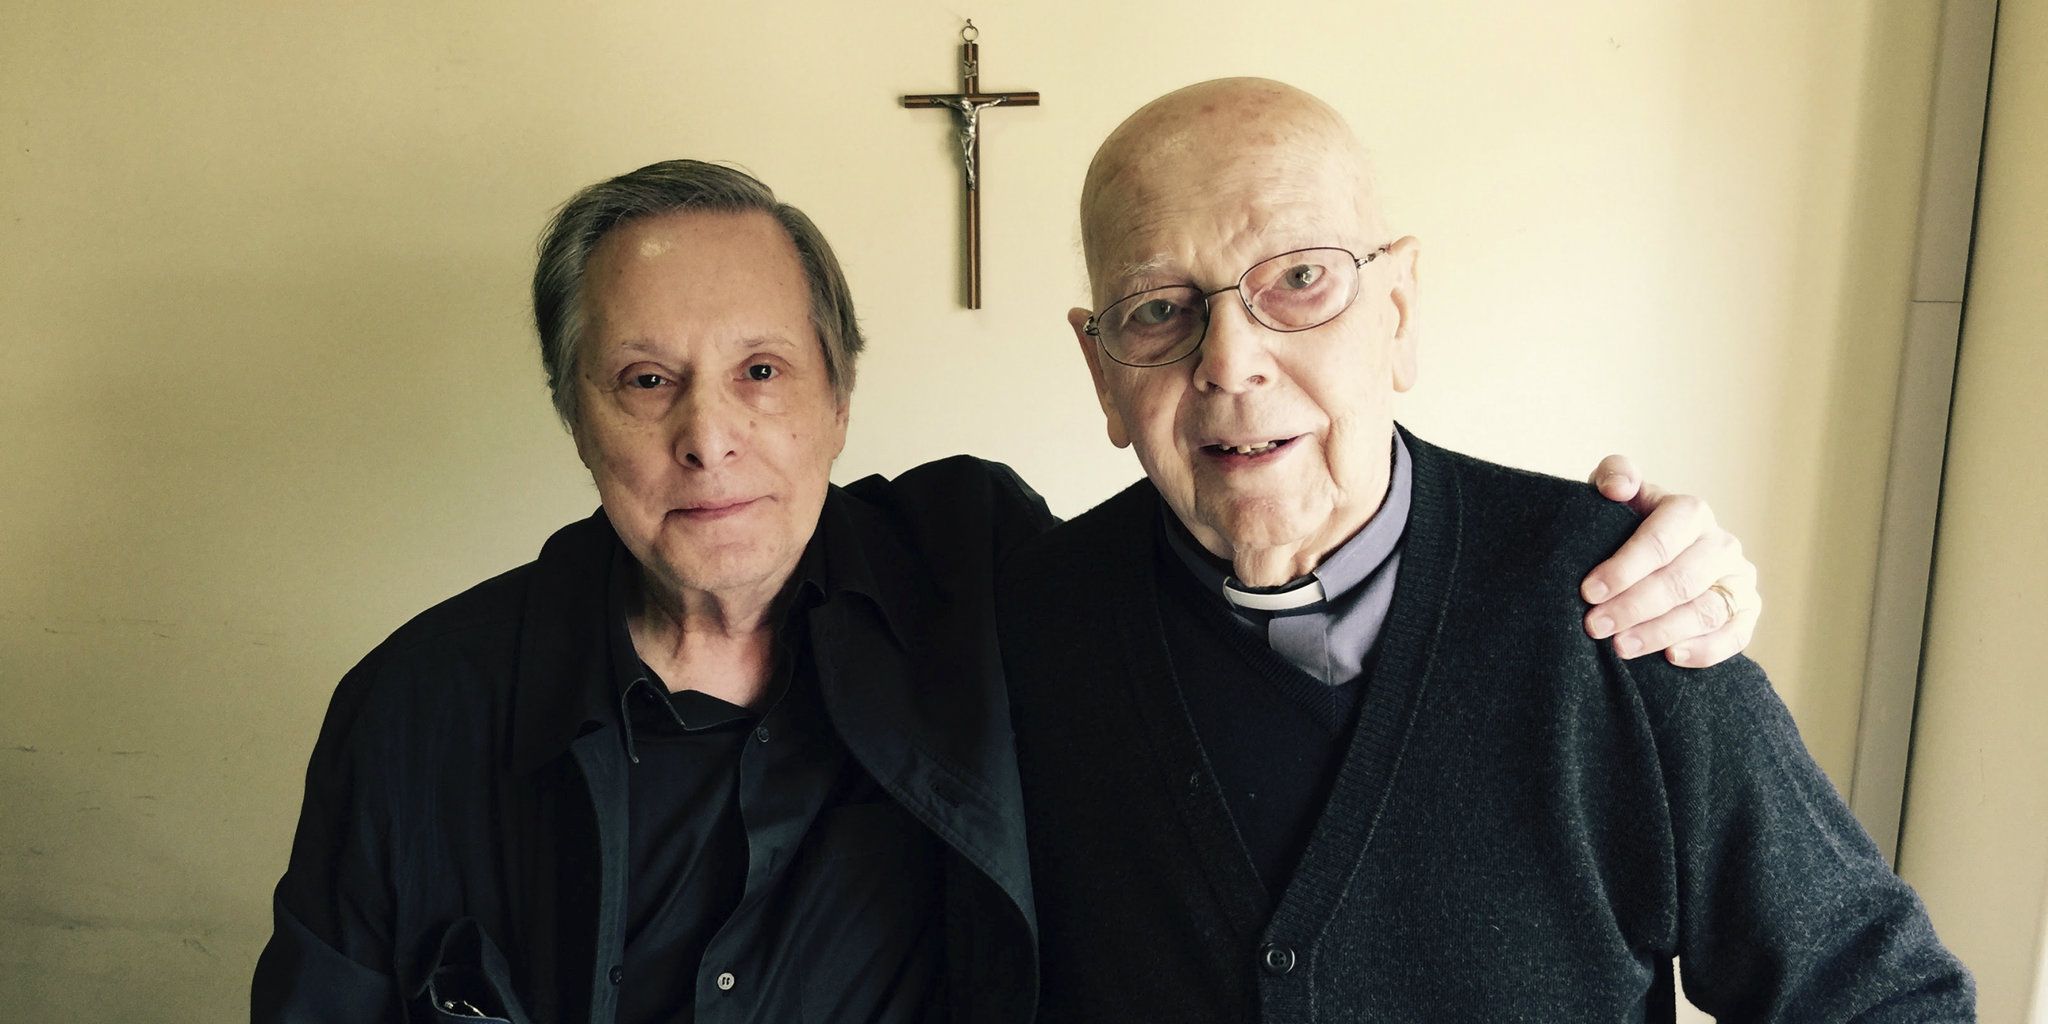 El documental del director exorcista Devil & Father Amorth tiene un tráiler